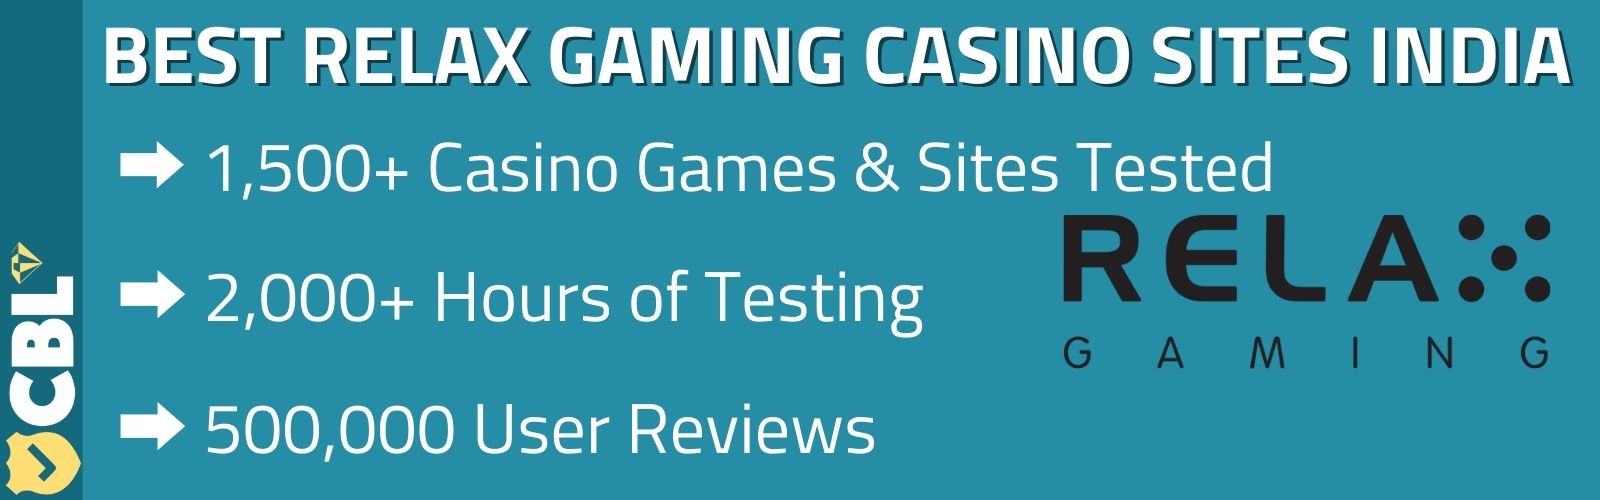 Relax Gaming Casino